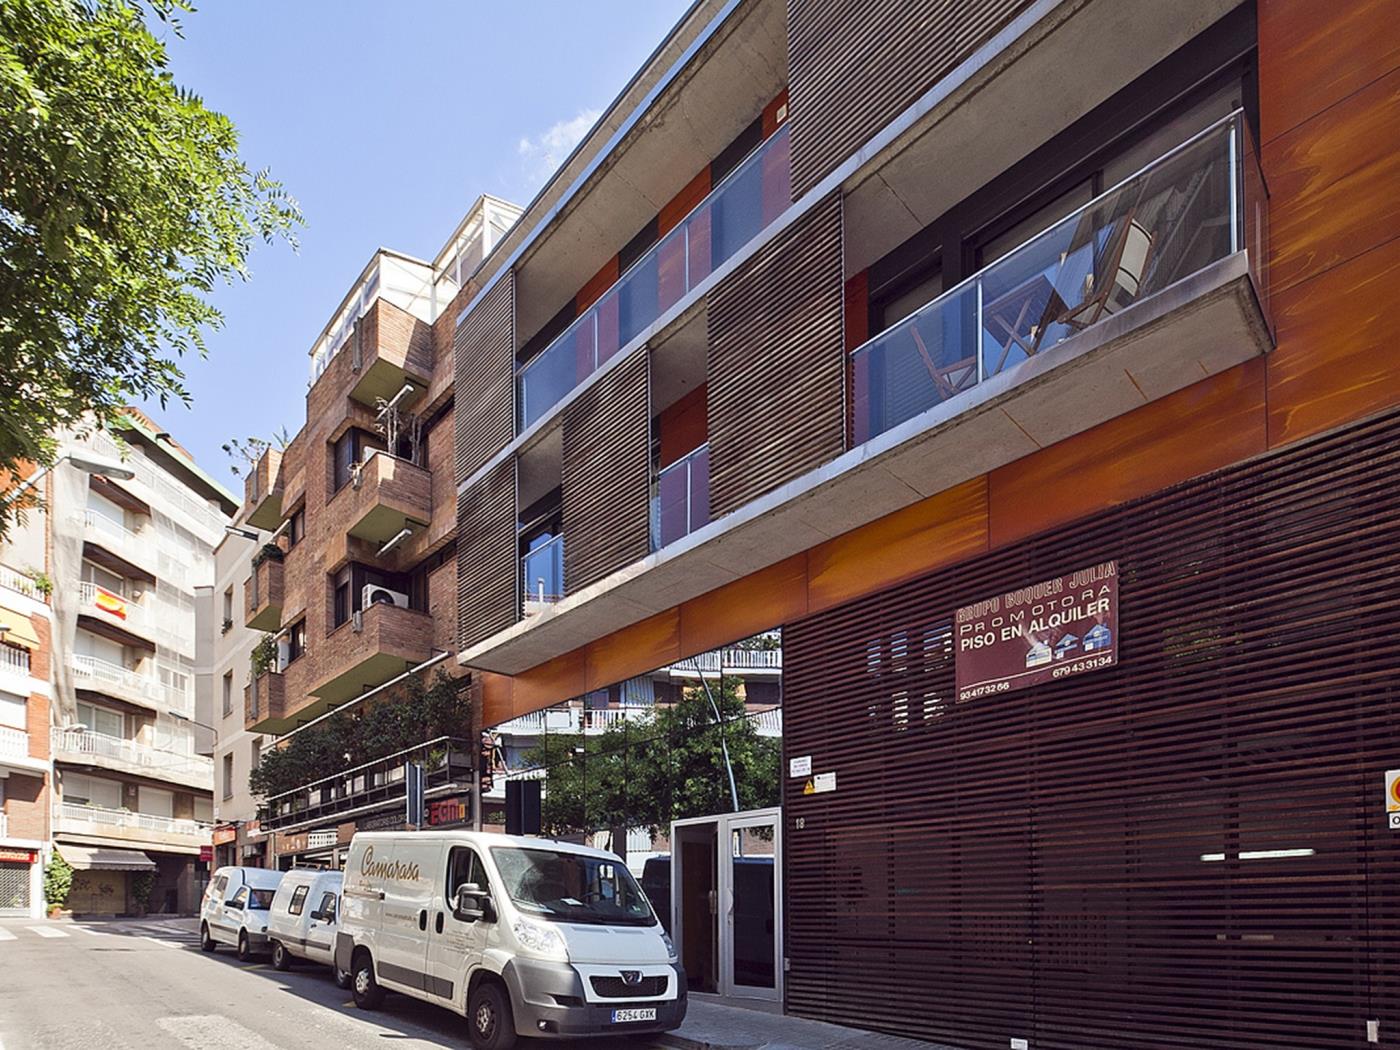 Corporate Executive Appartments in der nähe dem Zentrum - My Space Barcelona Appartementen